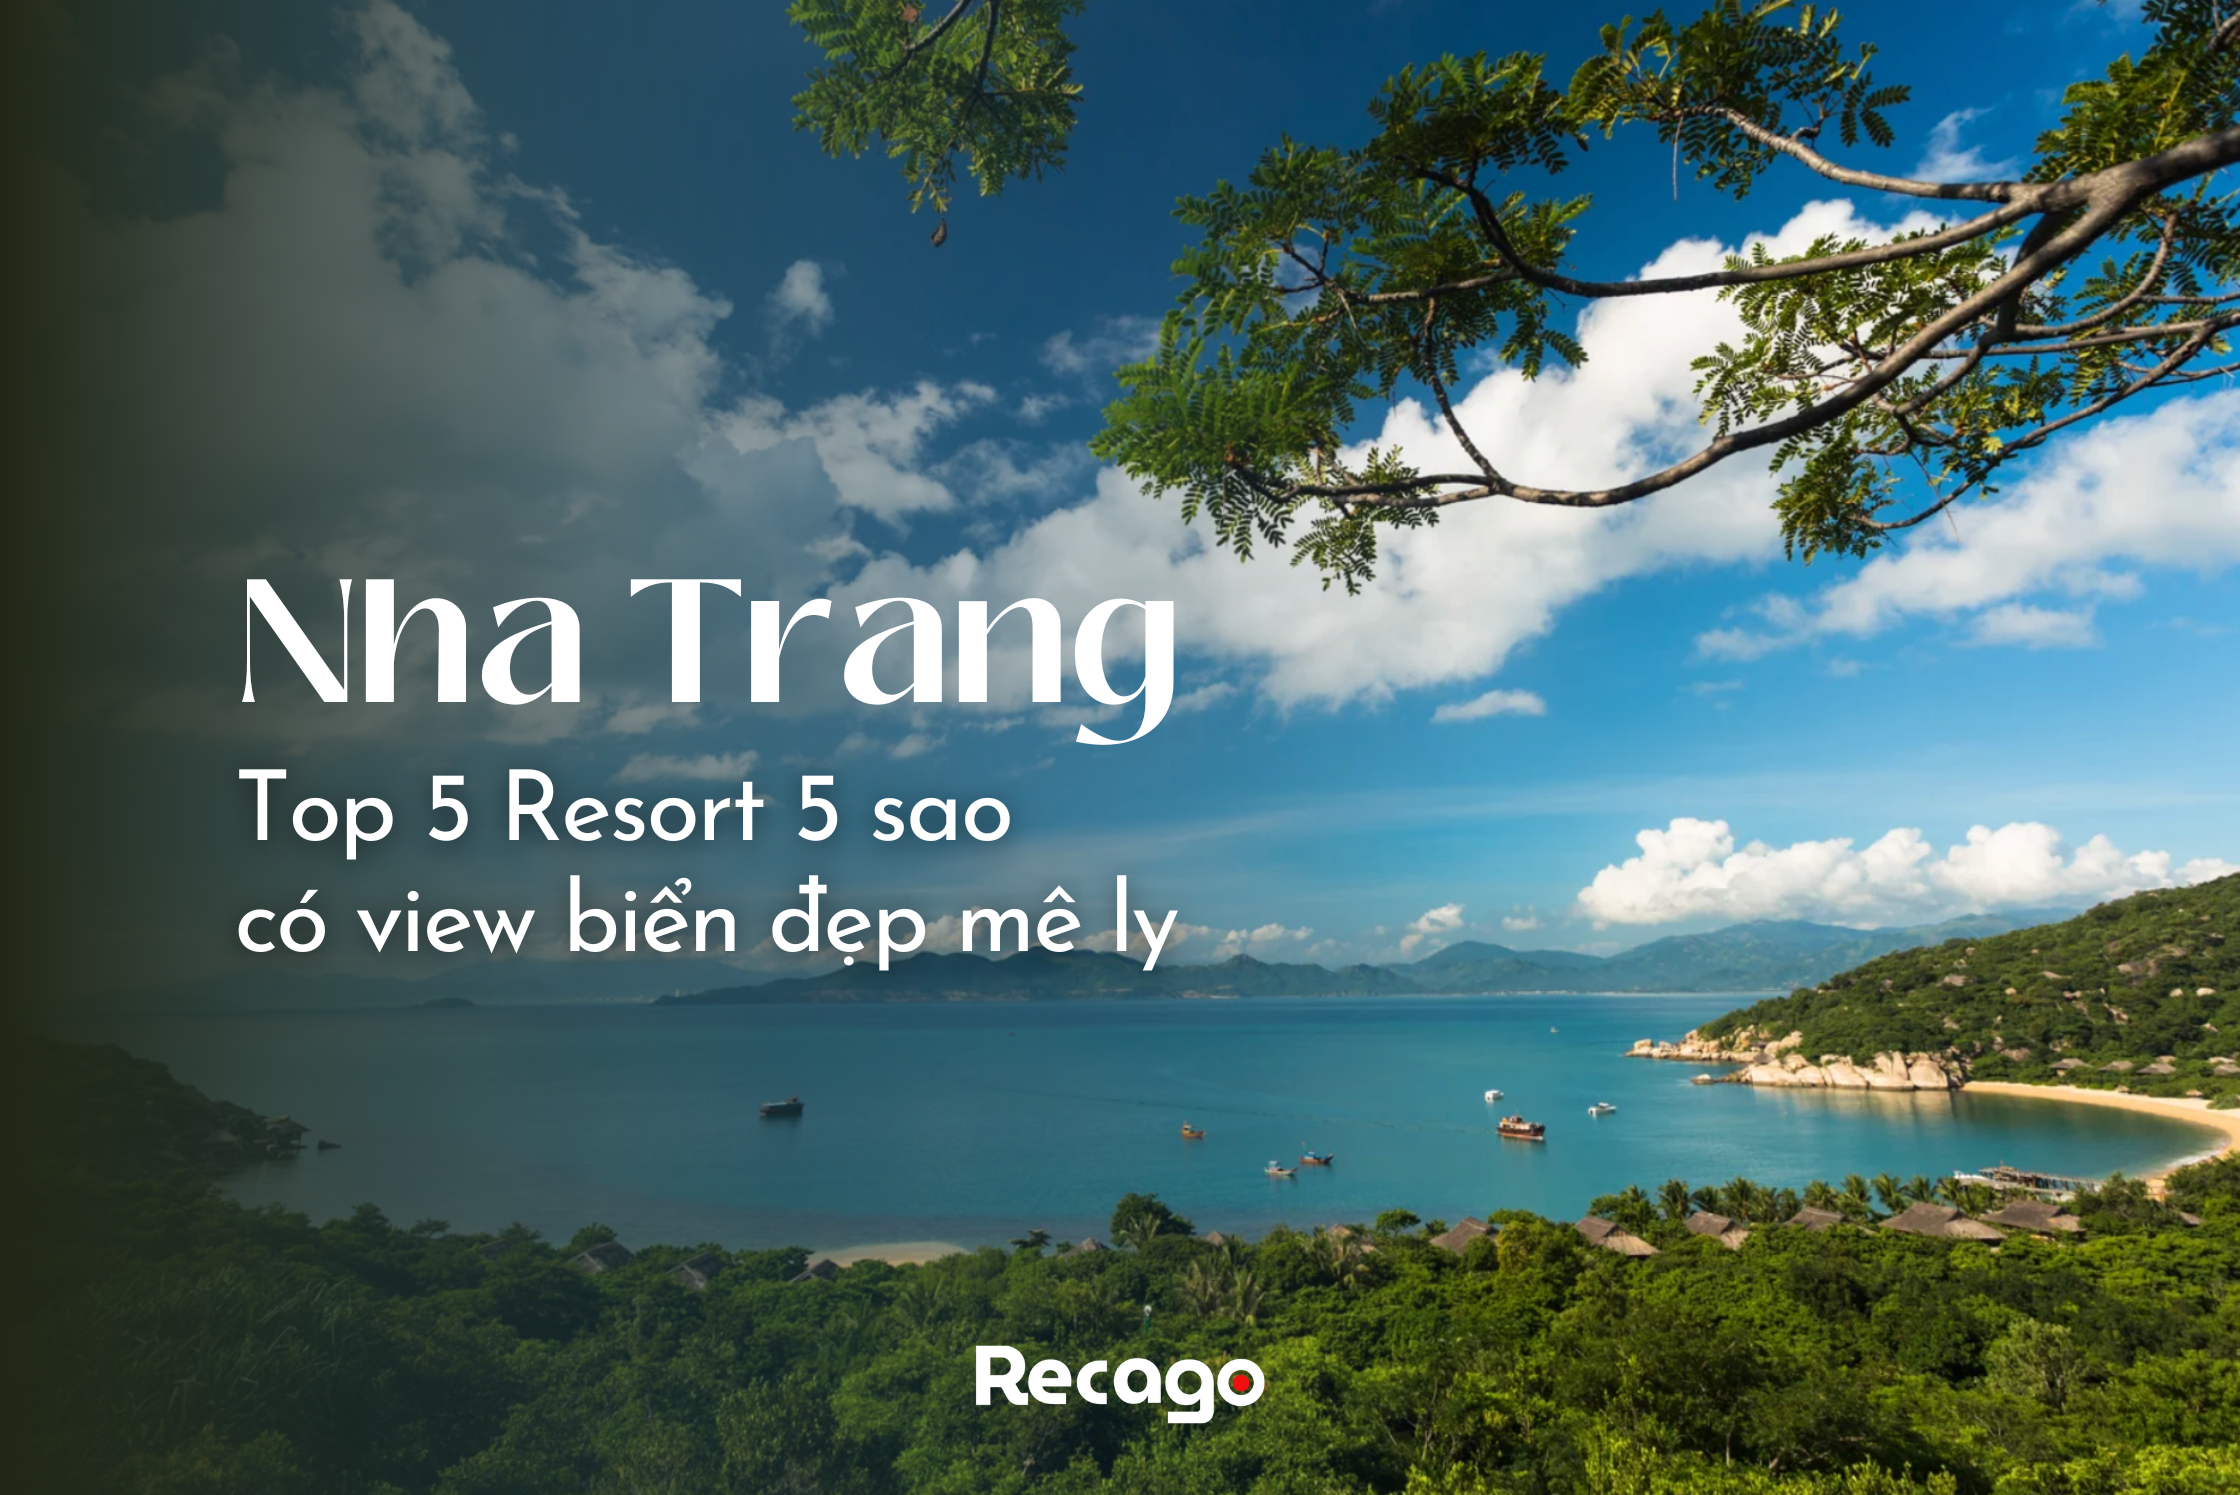 Top 5 Resort 5 sao Nha Trang có view biển đẹp mê ly